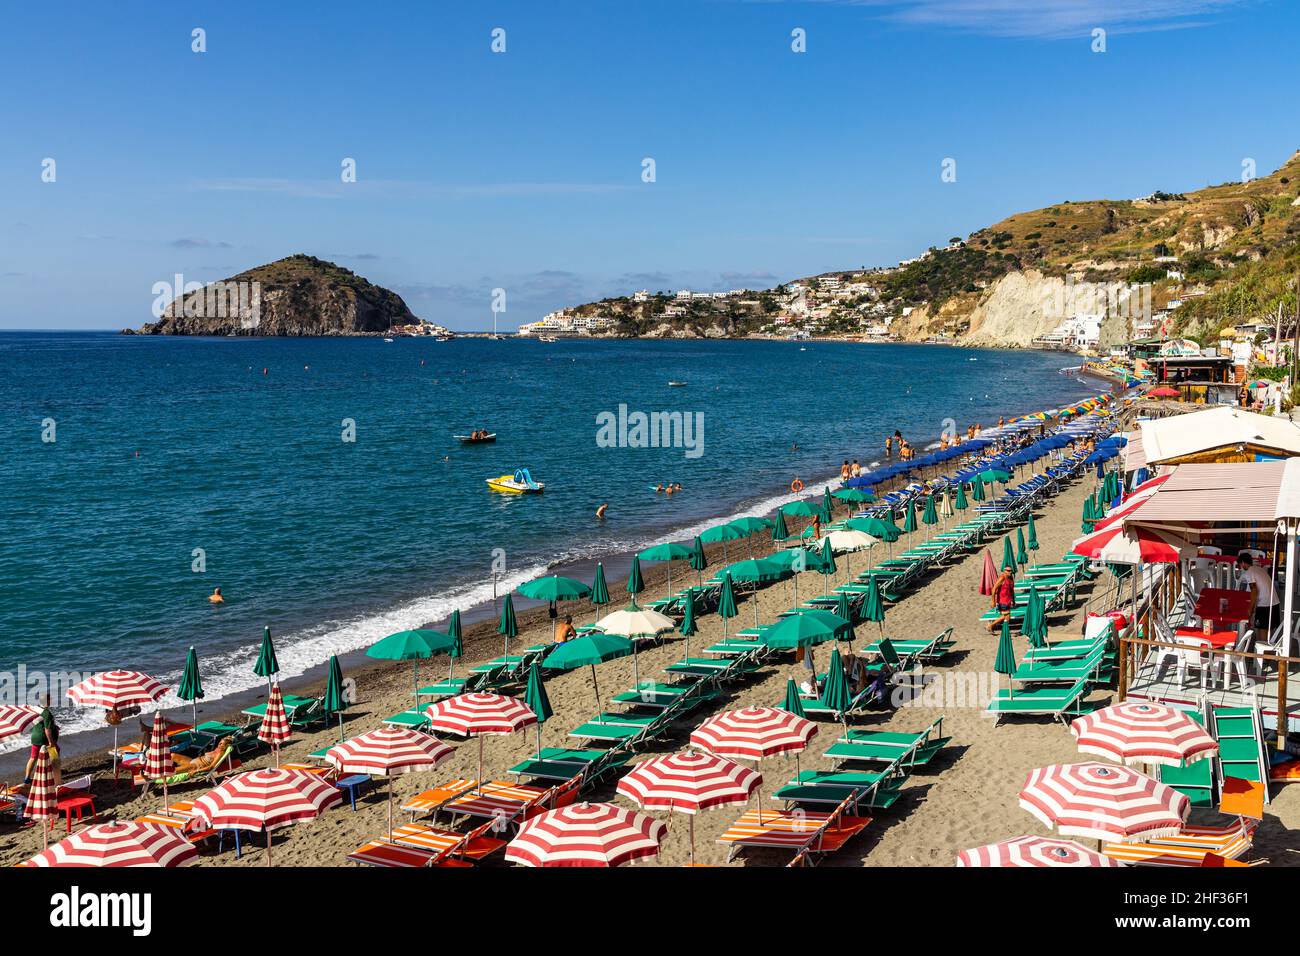 Vue sur la plage de Maronti, la plus grande plage d'Ischia destination populaire de vacances d'été, Ischia, Italie Banque D'Images